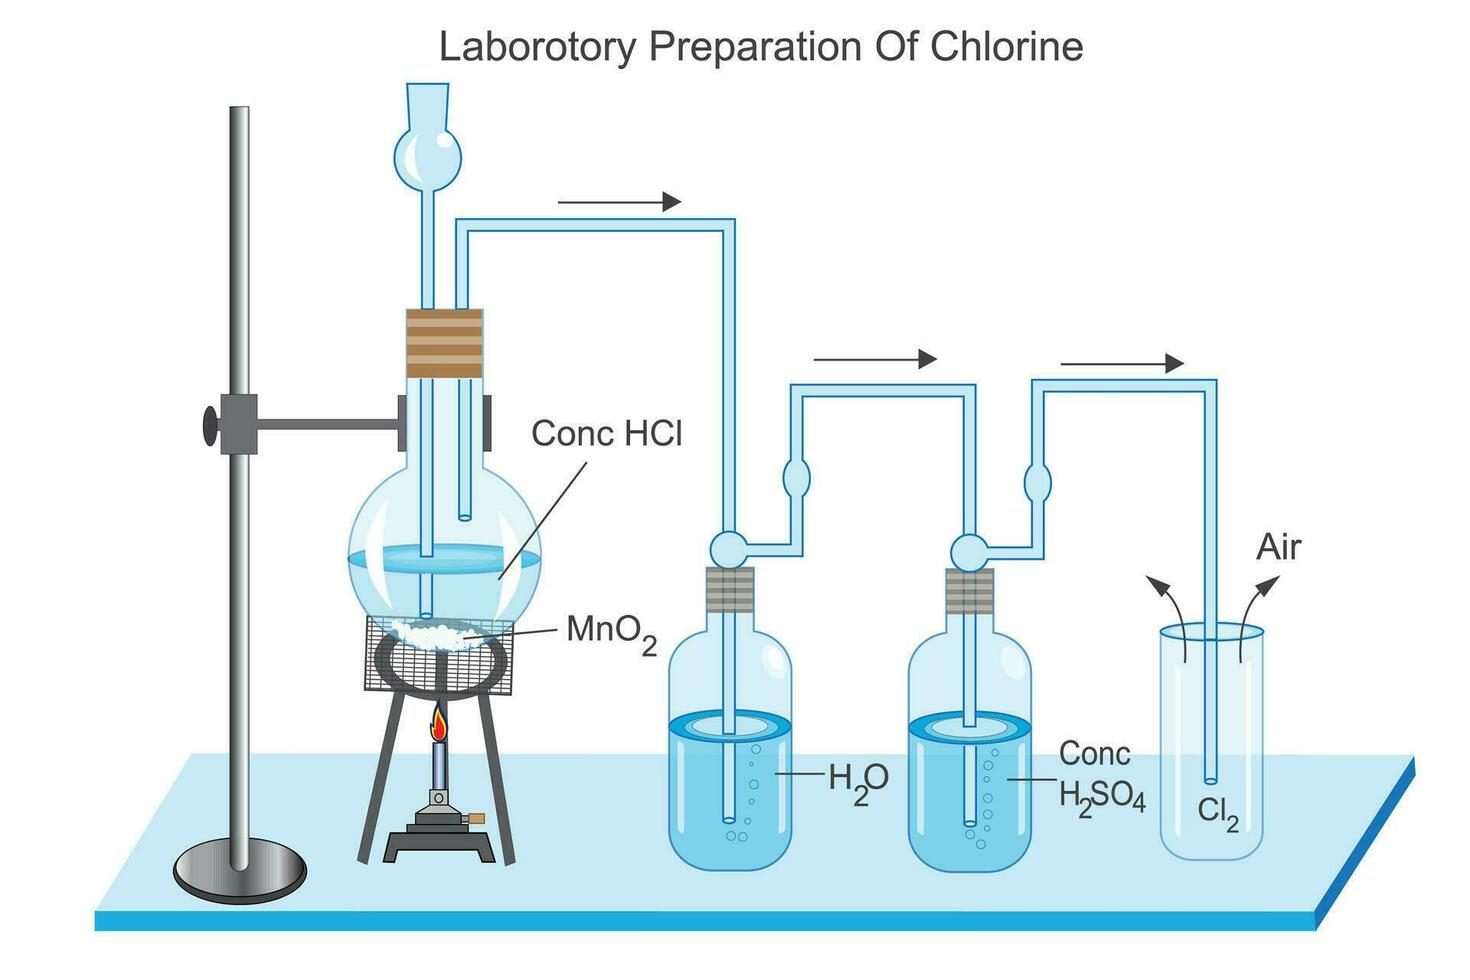 voorbereiding van chloor- in laboratorium. vector beeld illustratie.geconcentreerd zoutzuur zuur en mangaan dioxide Reageer naar produceren chloor. chemie concept.